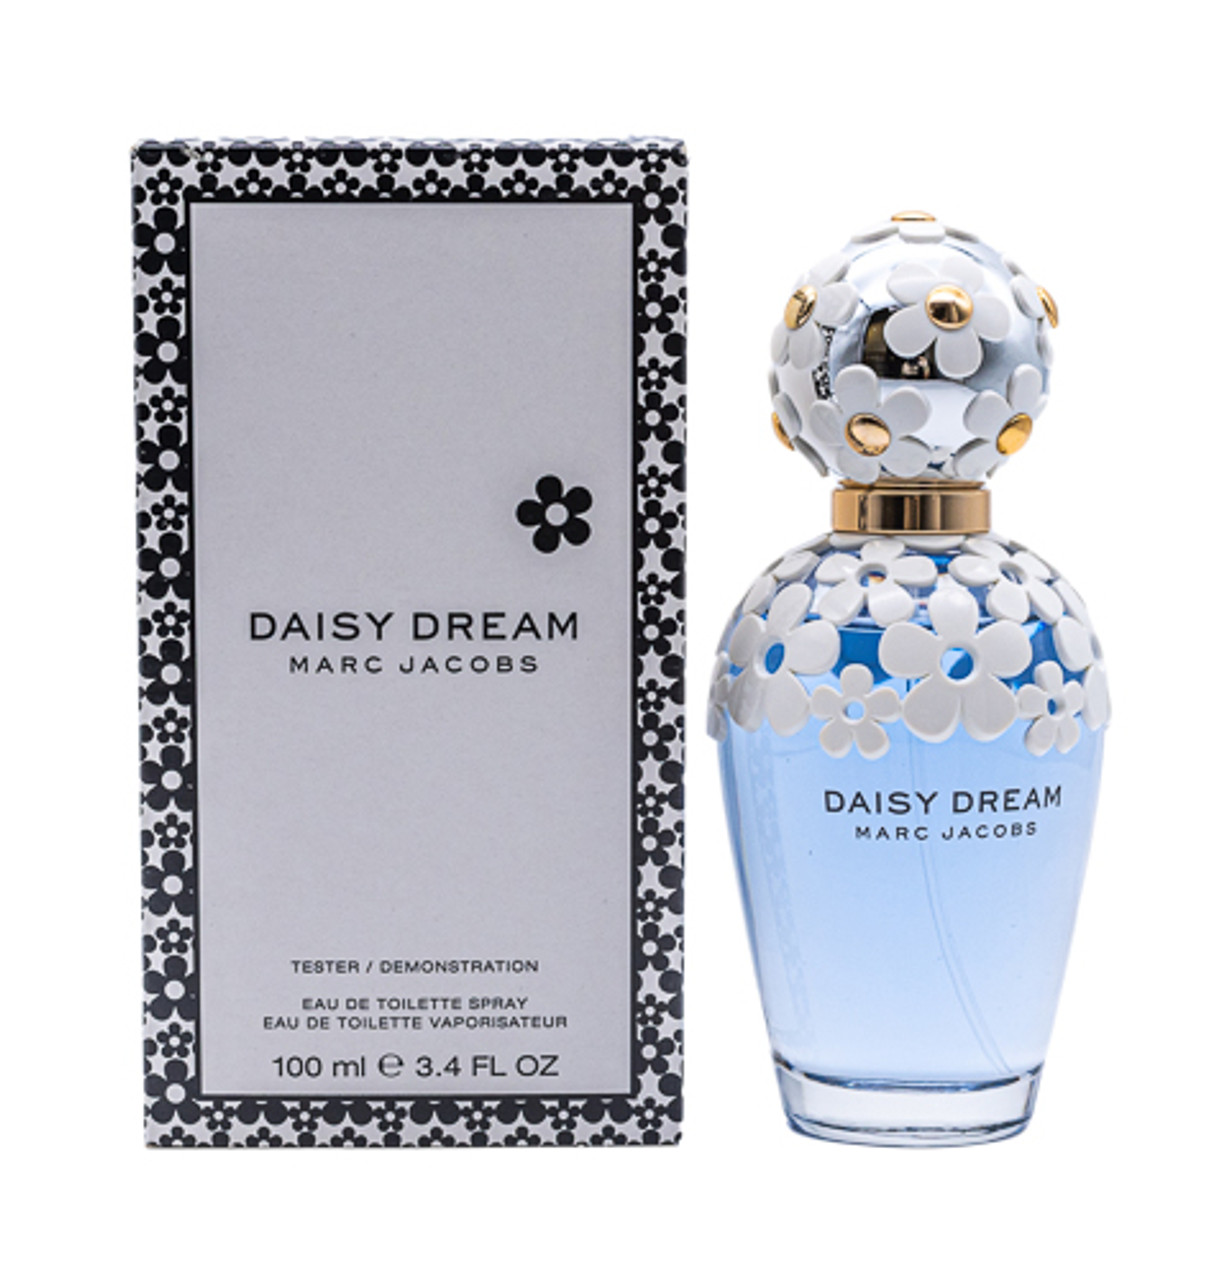 chanel daisy perfume